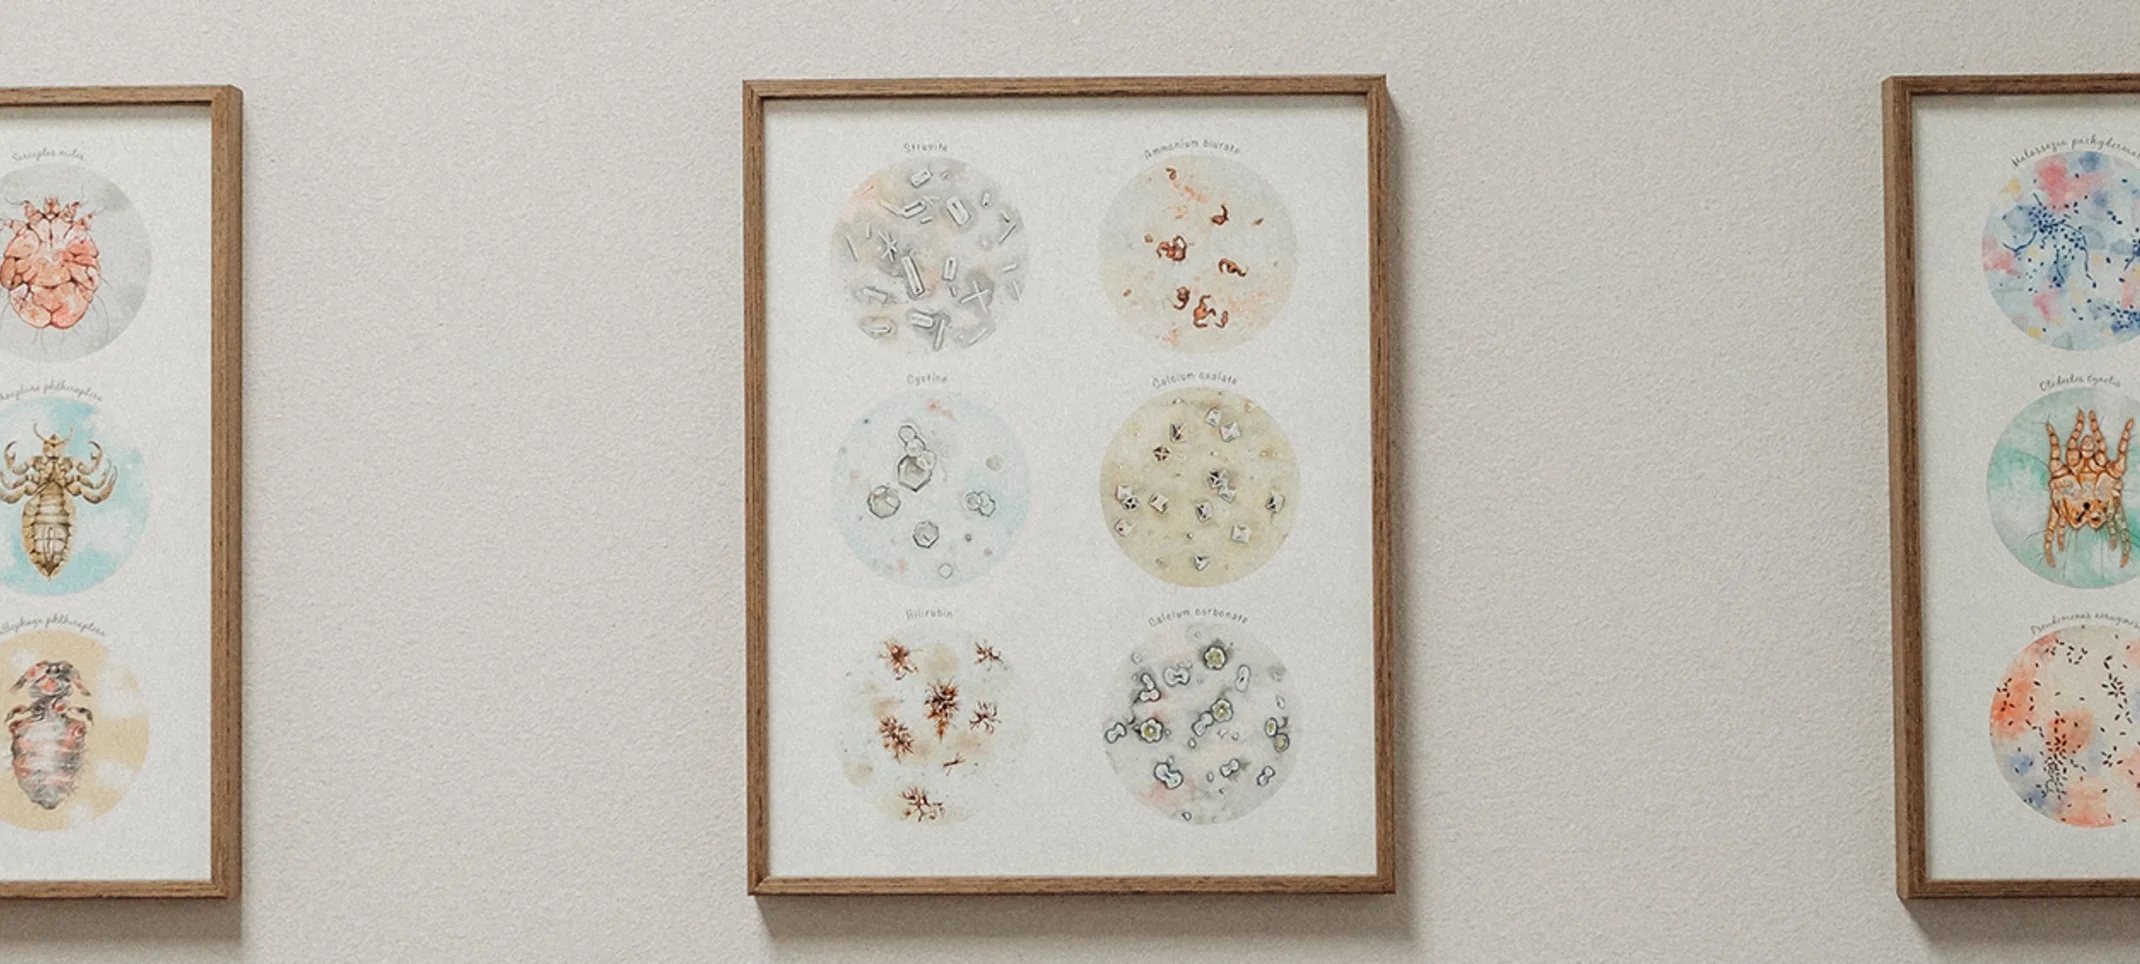 Photos displaying various bacteria